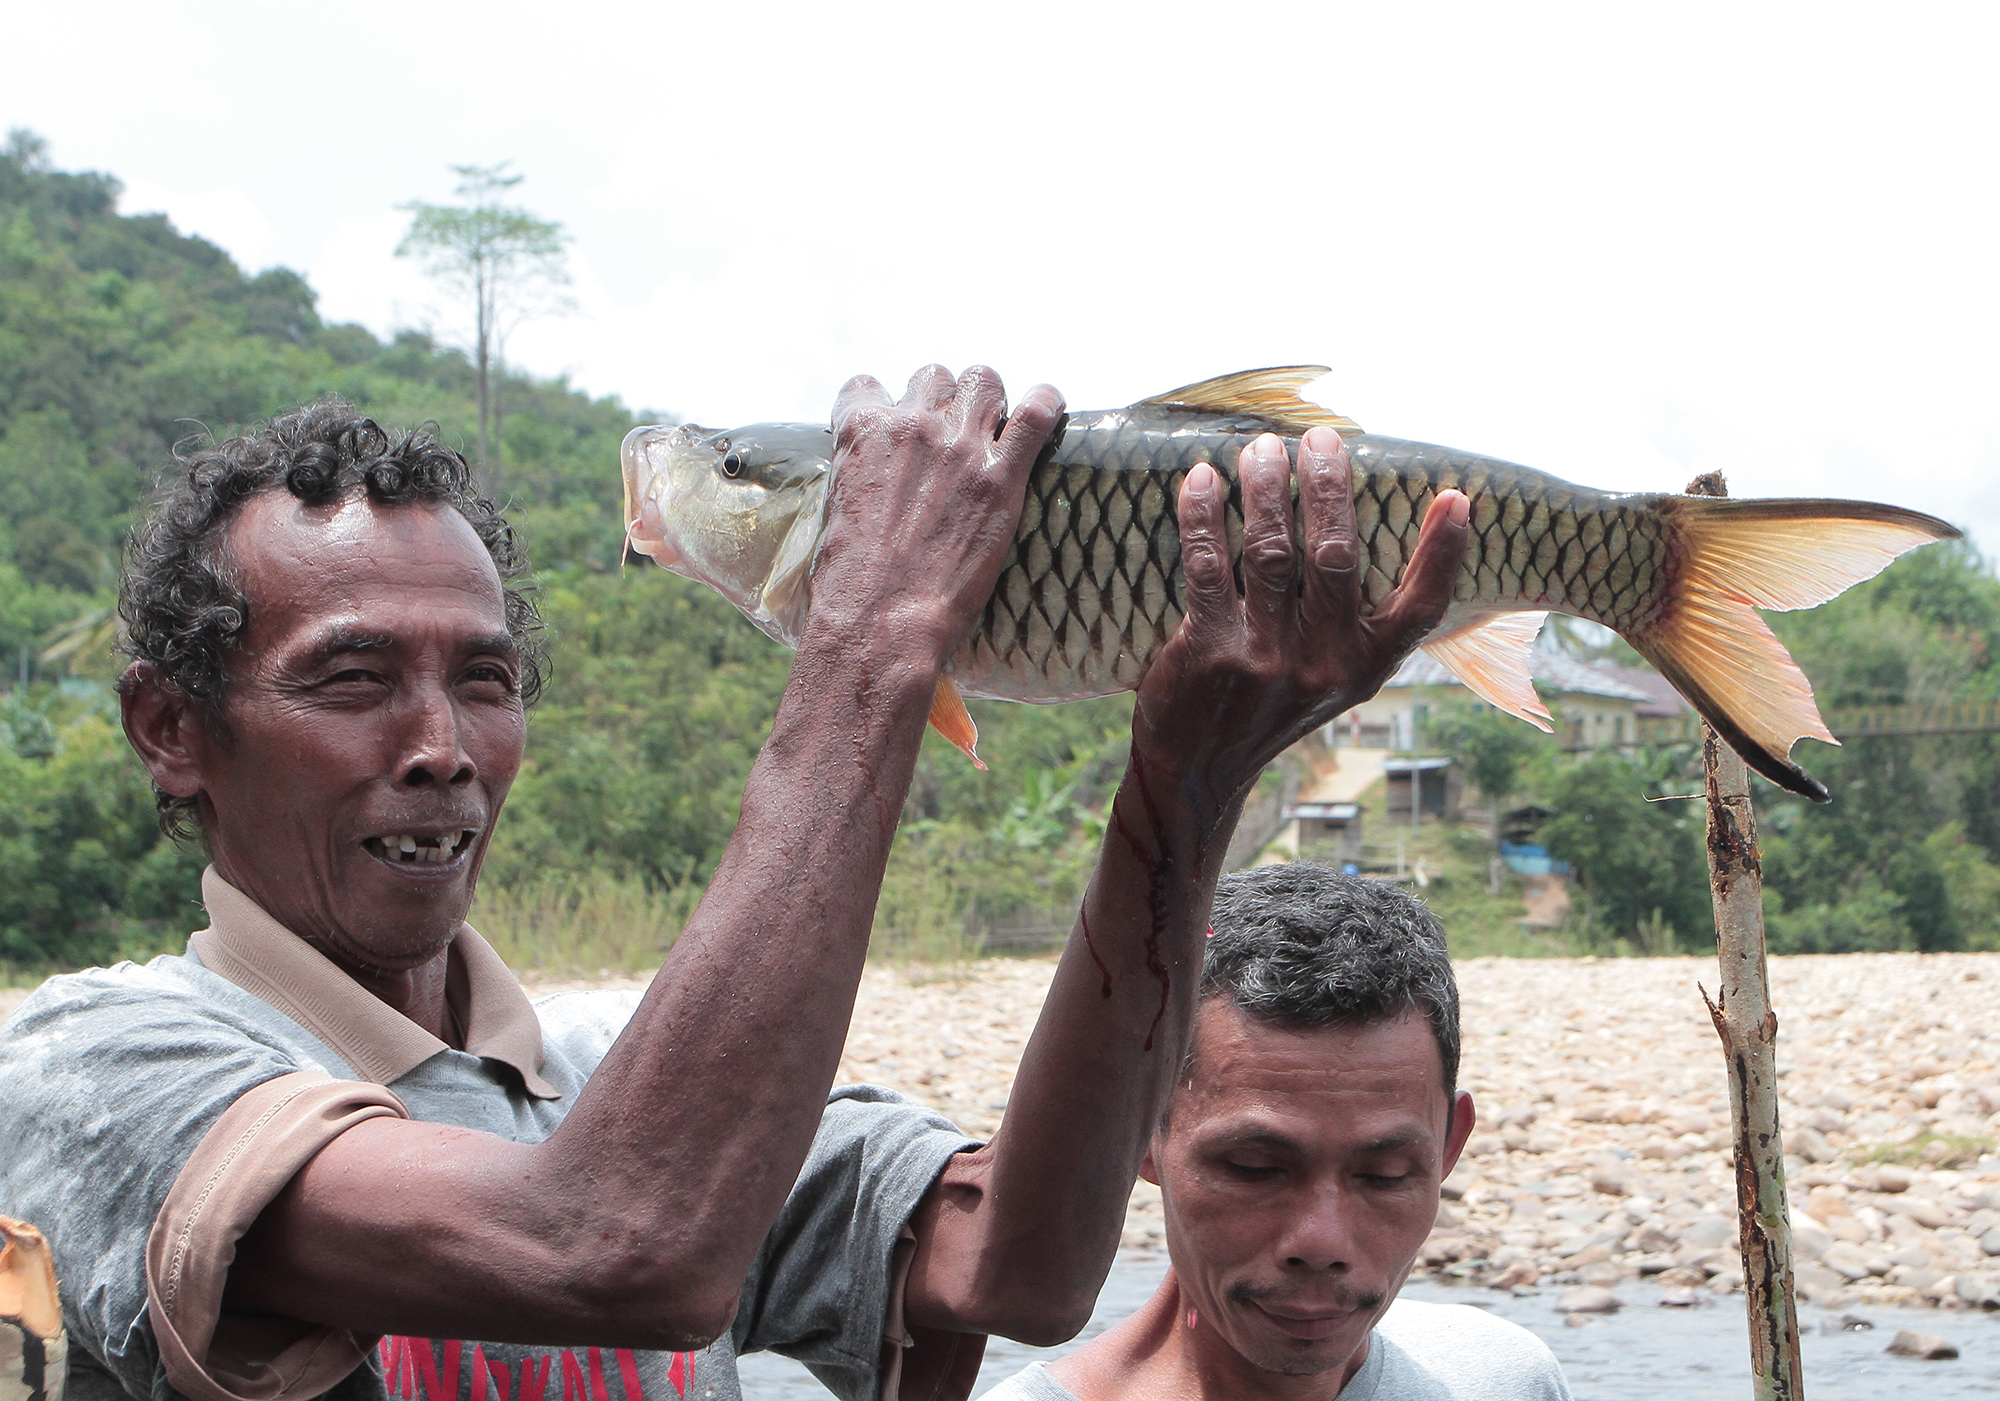 Warga menunjukkan ikan hasil dari mancoaku di Desa Aur Kuning, Kampar, Riau. Foto : Agustinus Wijayanto/Mongabay Indonesia